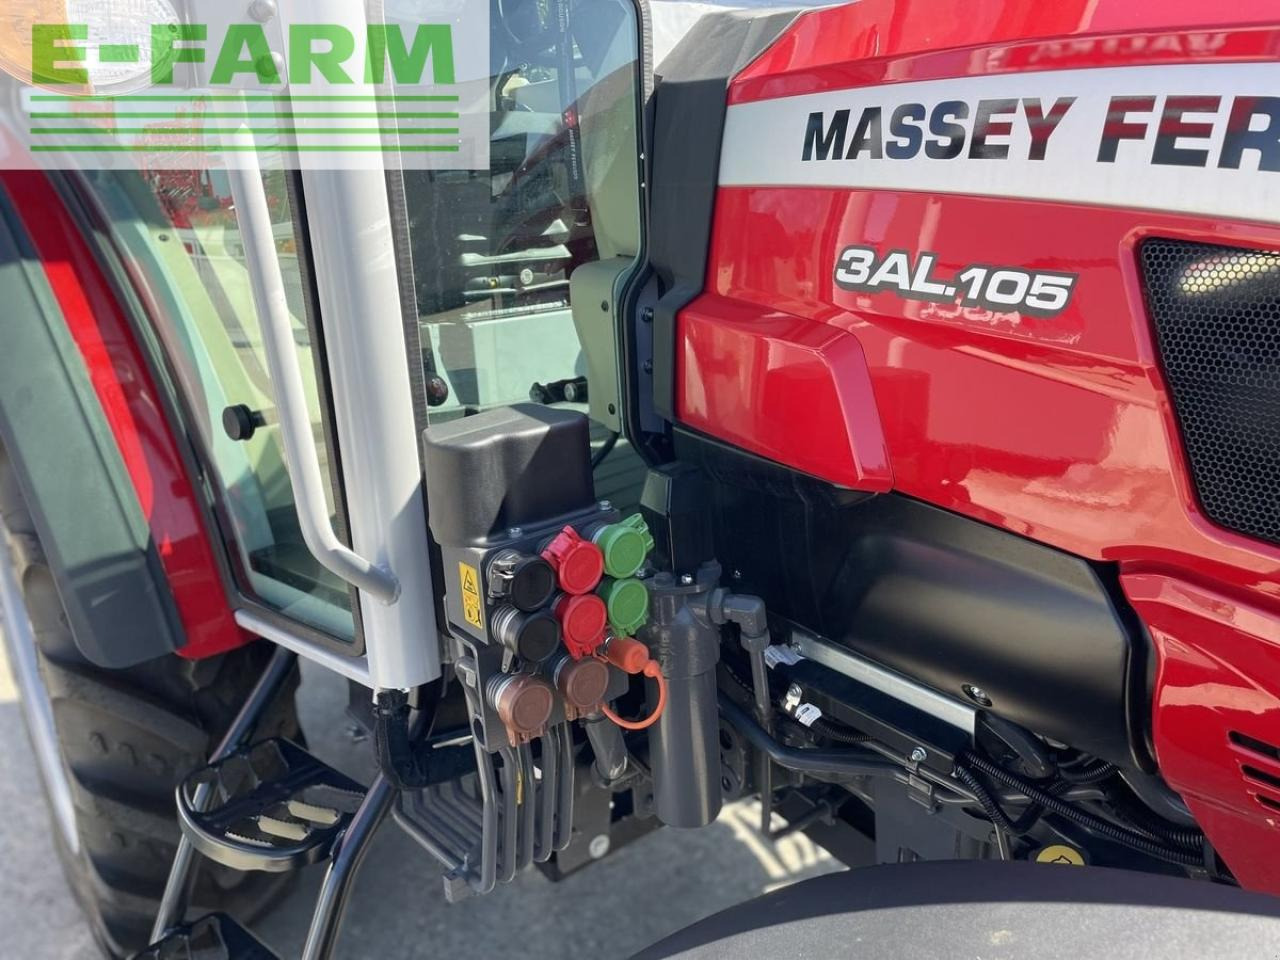 Farm tractor Massey Ferguson mf 3al.105: picture 6